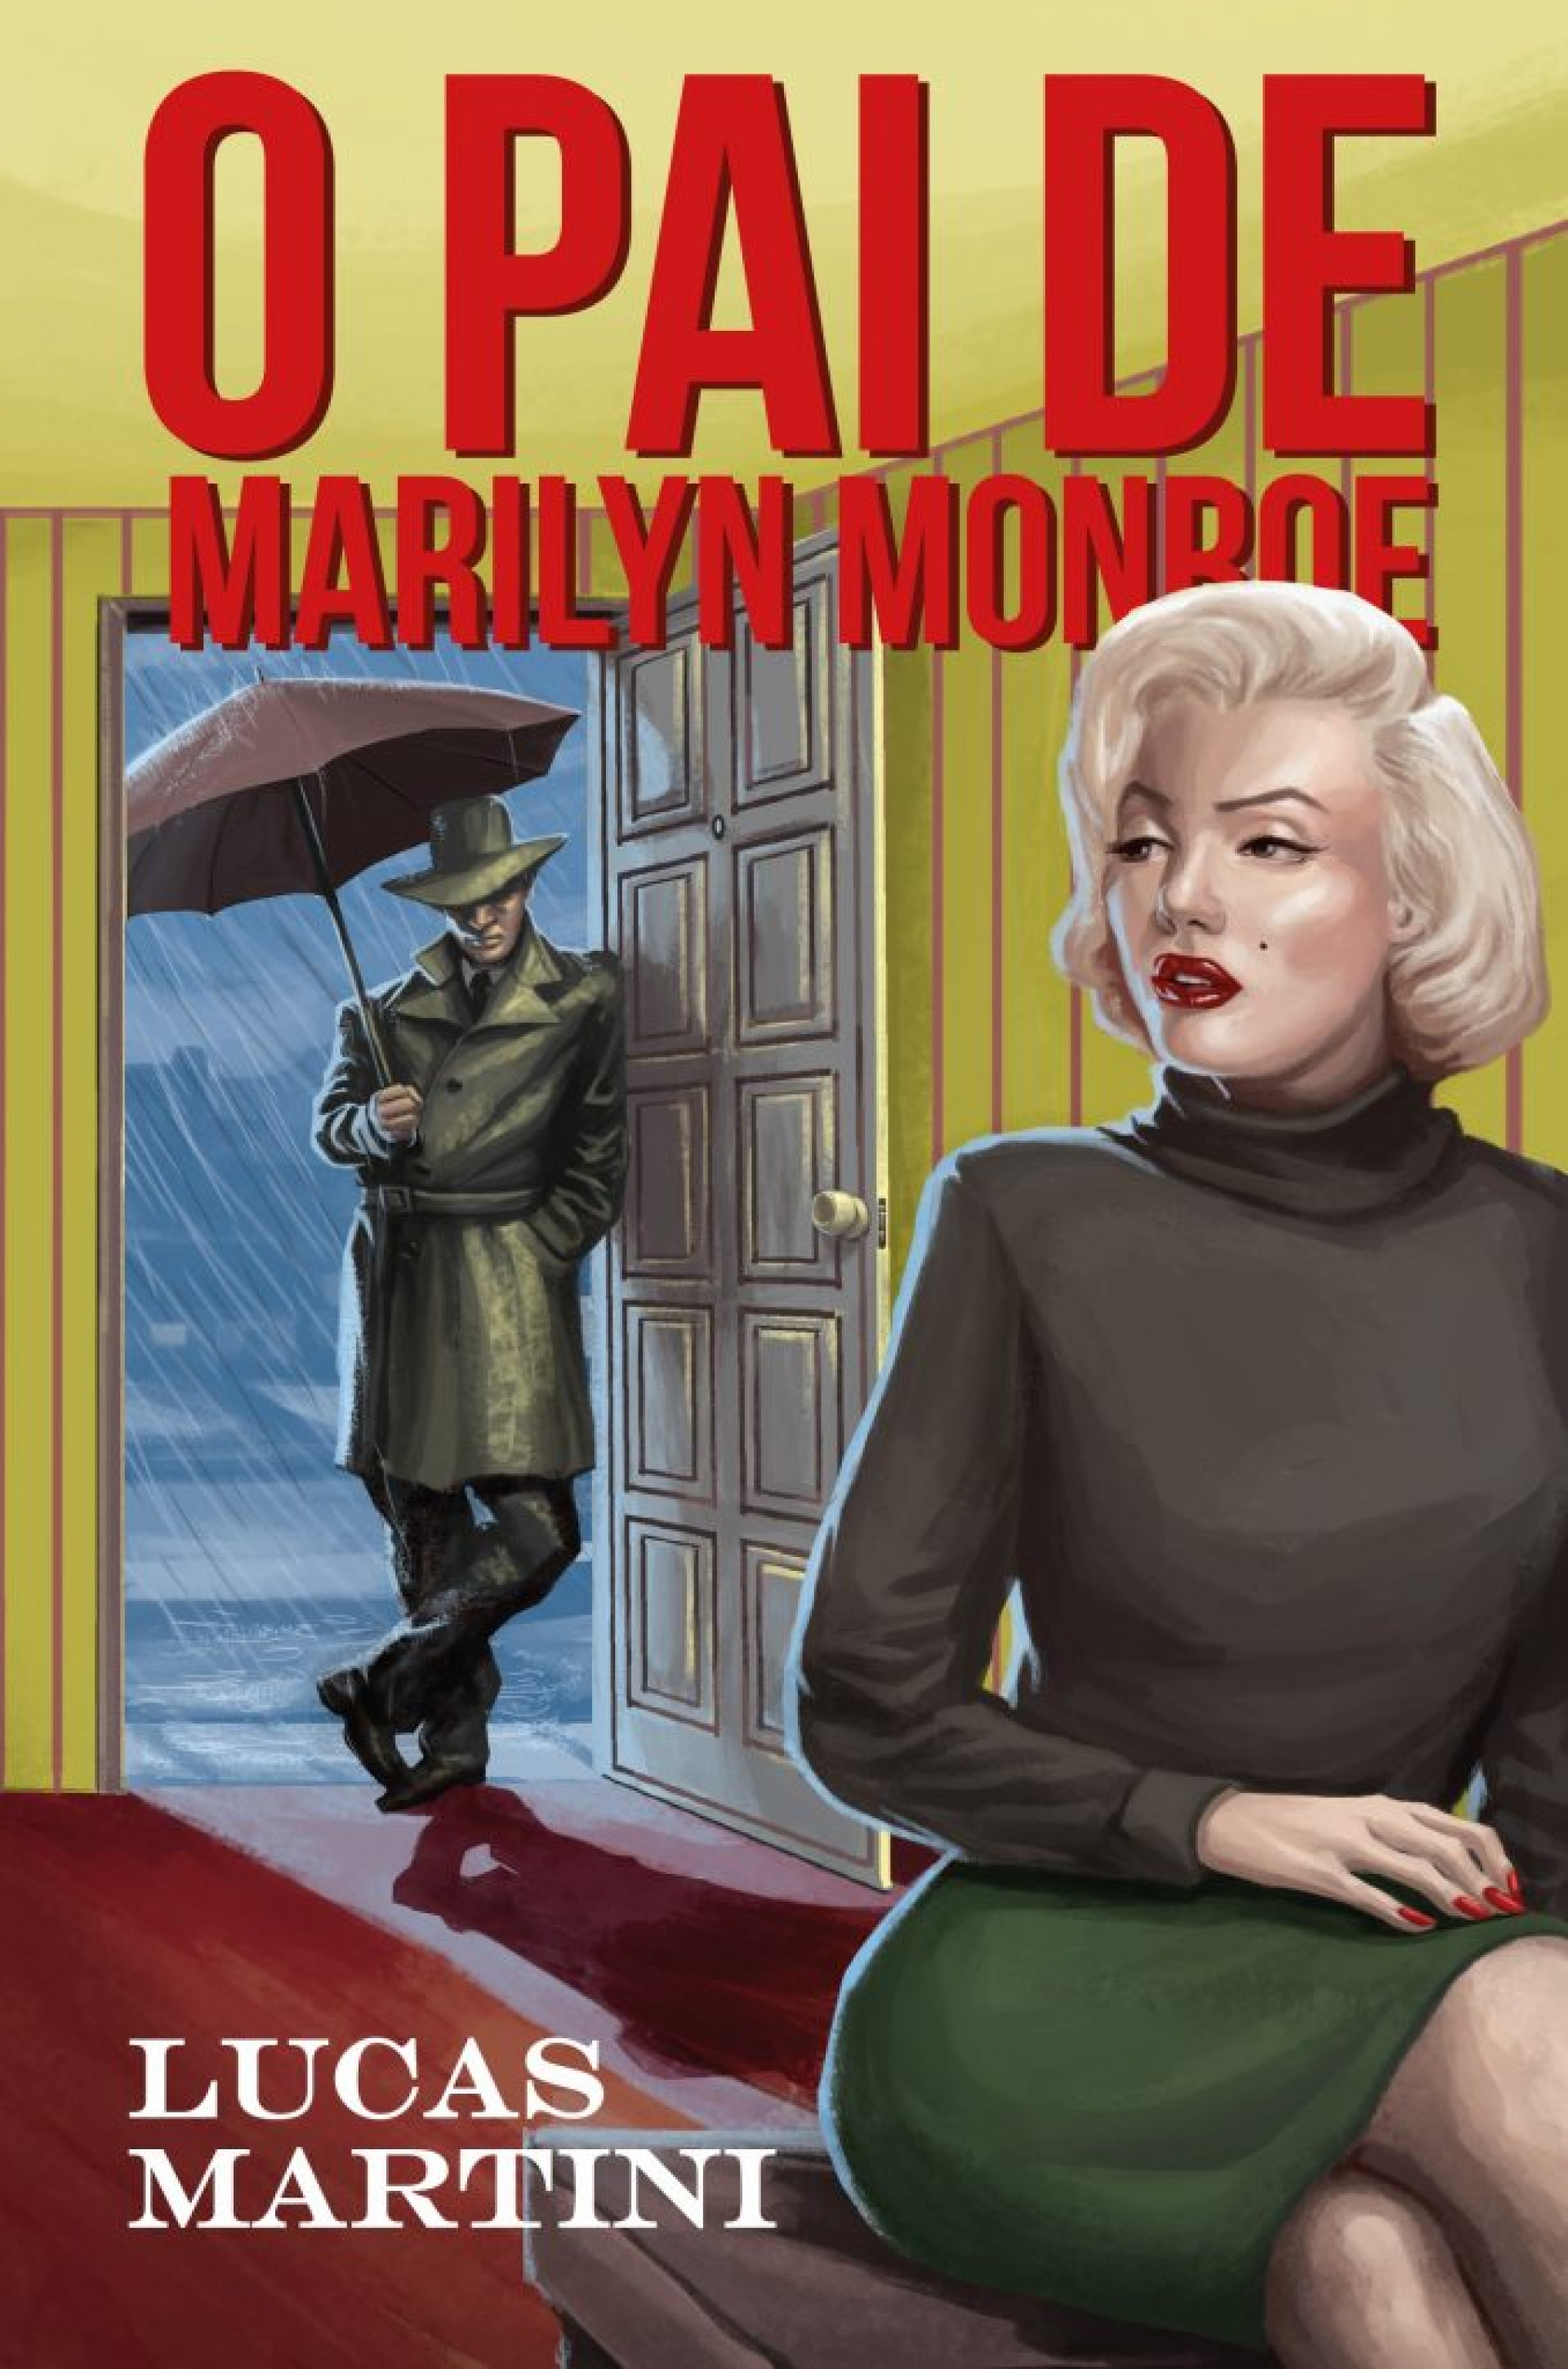 Marilyn Monroe: memória presente - Café História